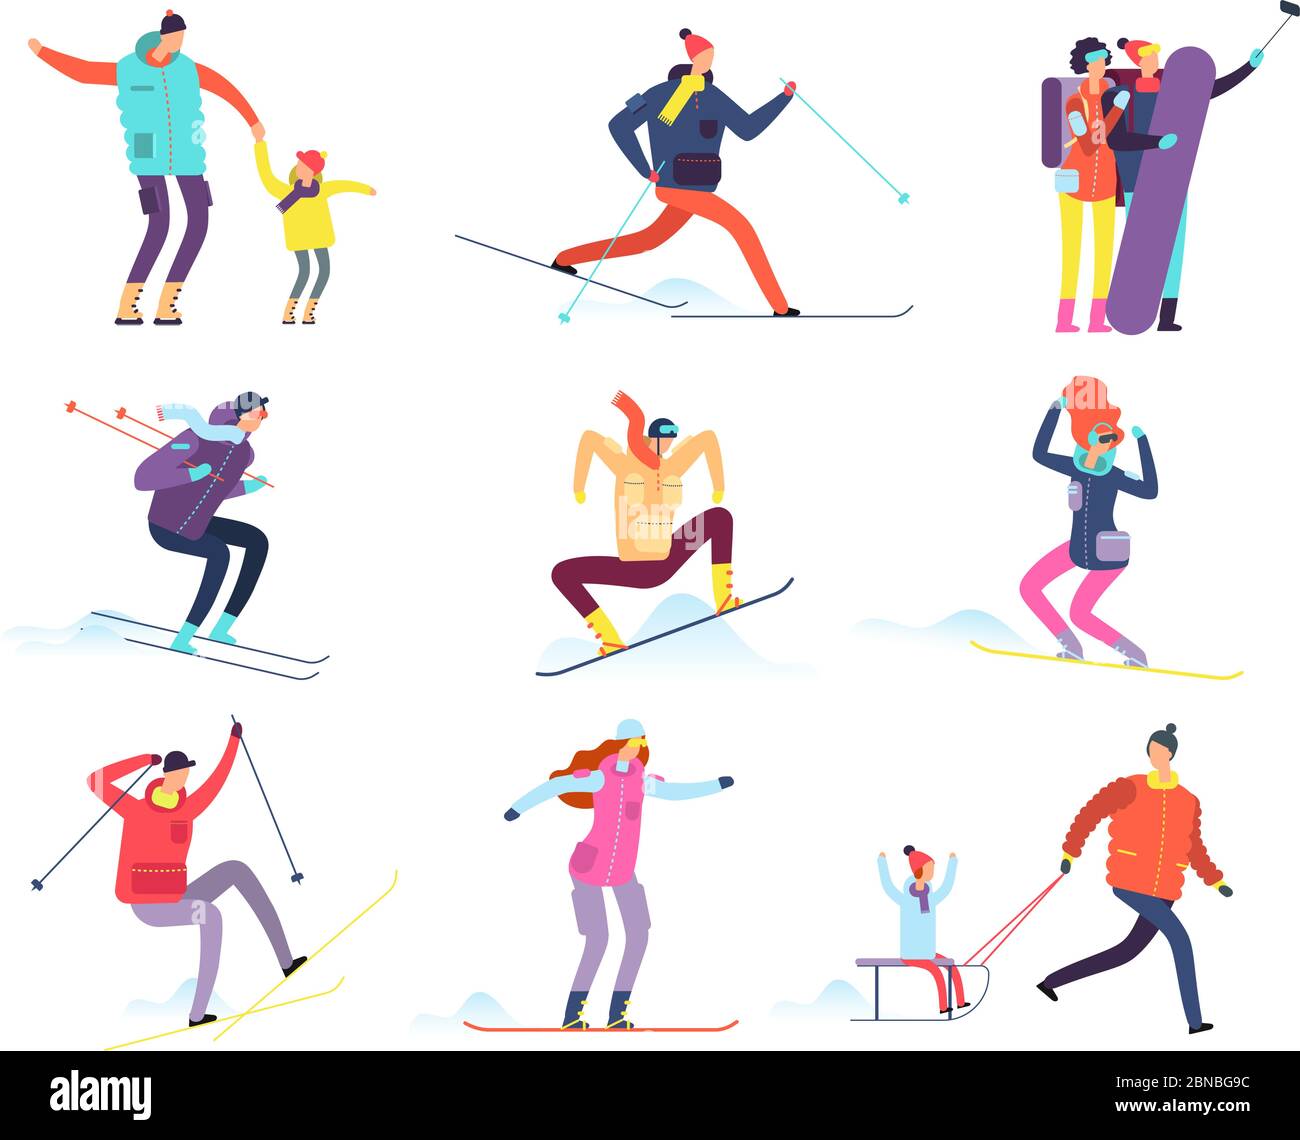 Wintersportler. Erwachsene und Kinder in Winterkleidung Snowboarden und Skifahren. Vektor Cartoon-Figuren. Winter Snowboard und Ski, Snowboarder Charakter Illustration Stock Vektor